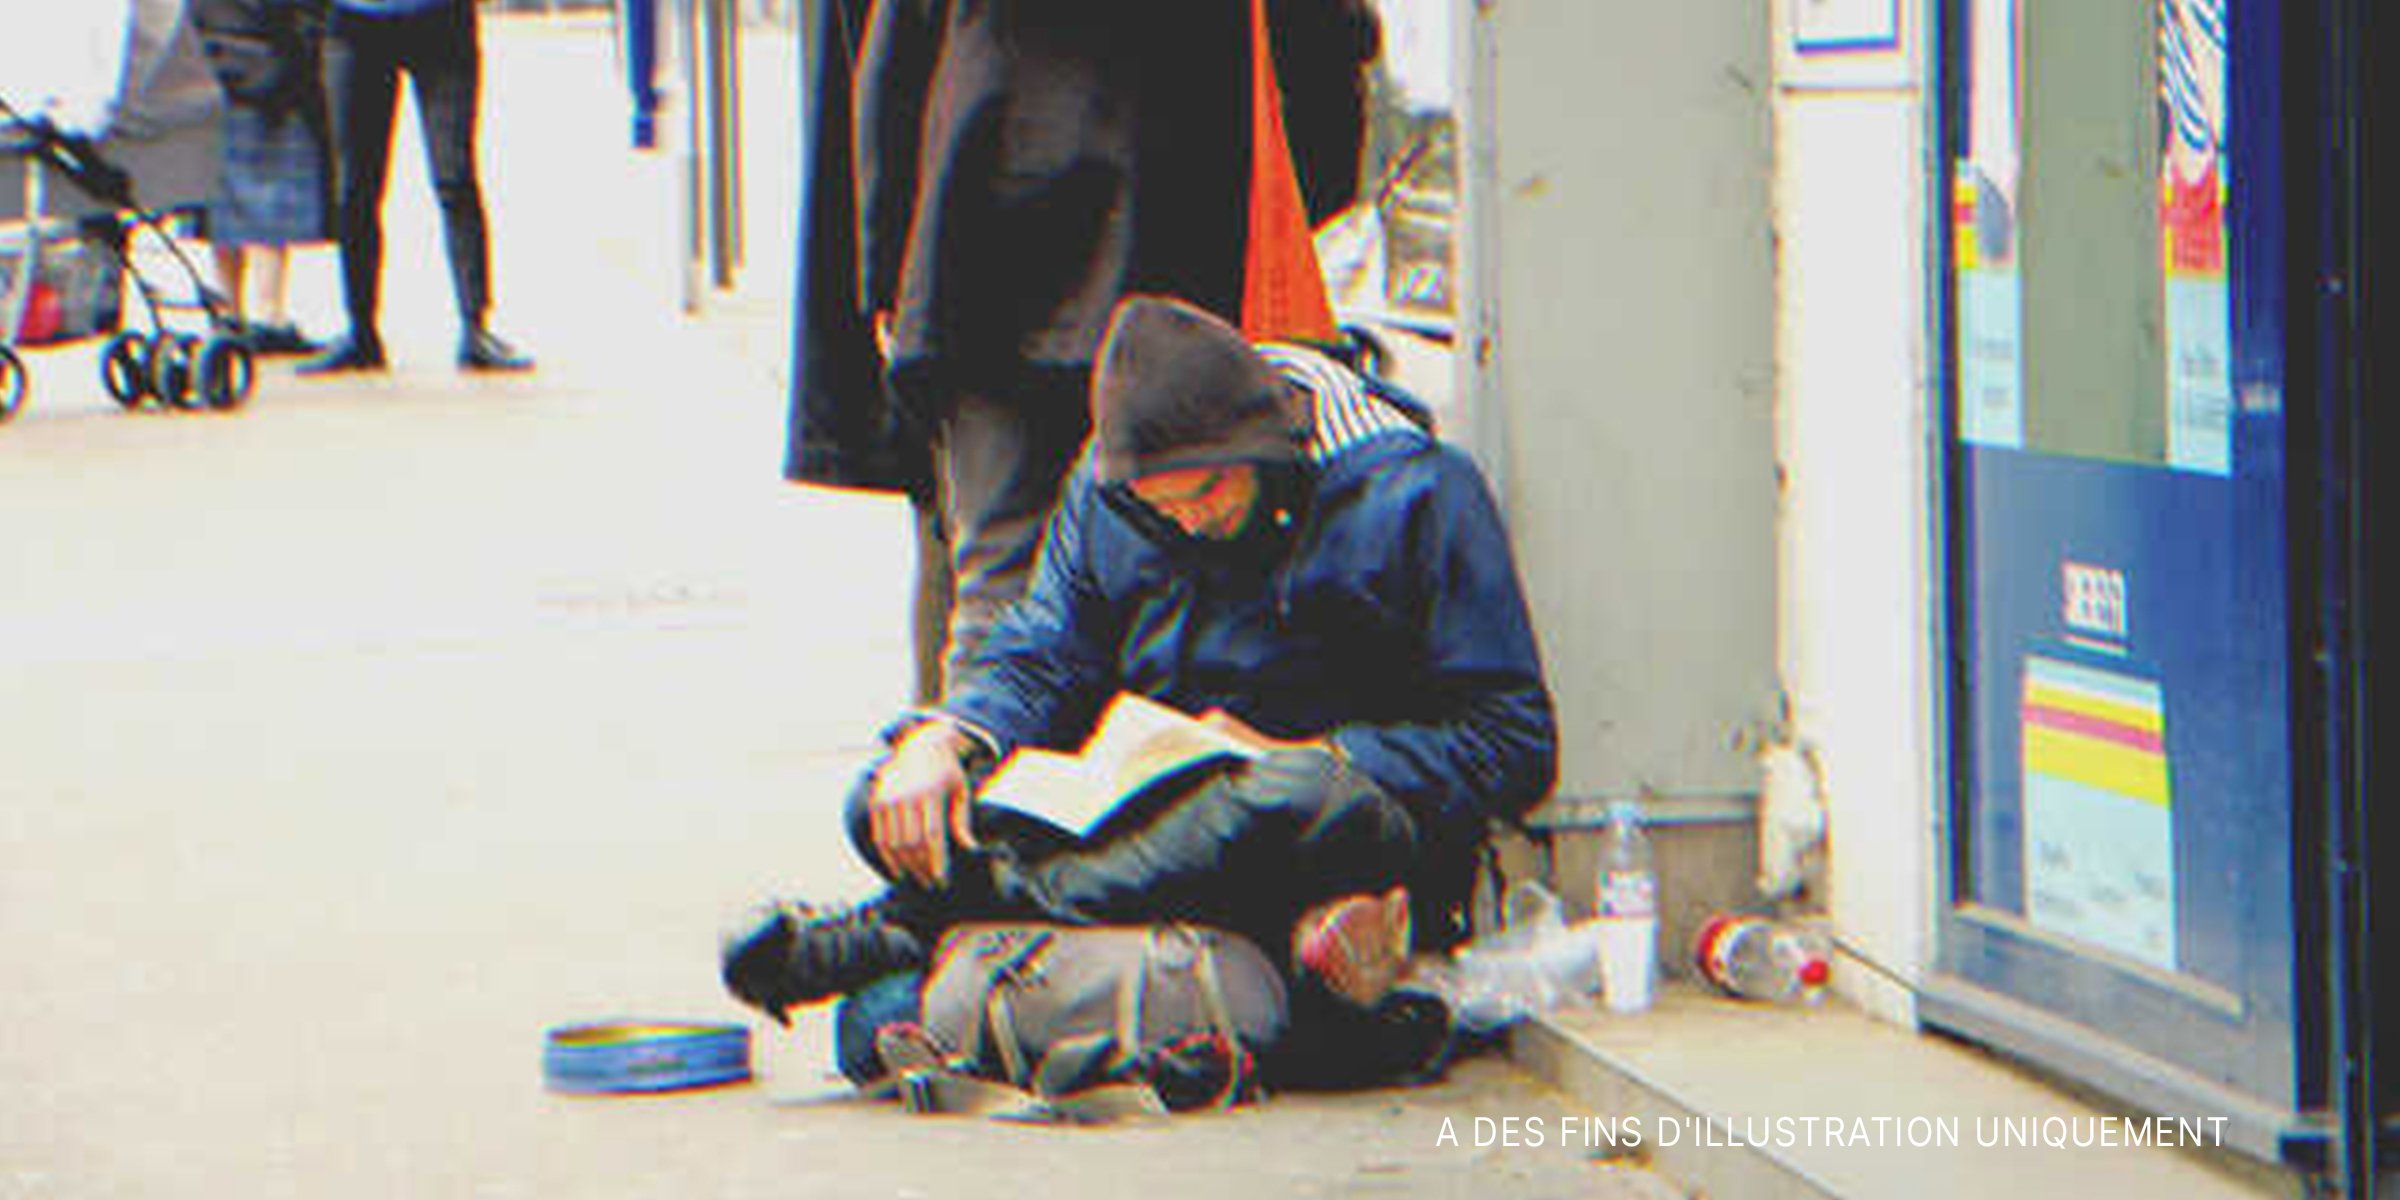 Un sans-abri lisant un livre | Source : Shutterstock